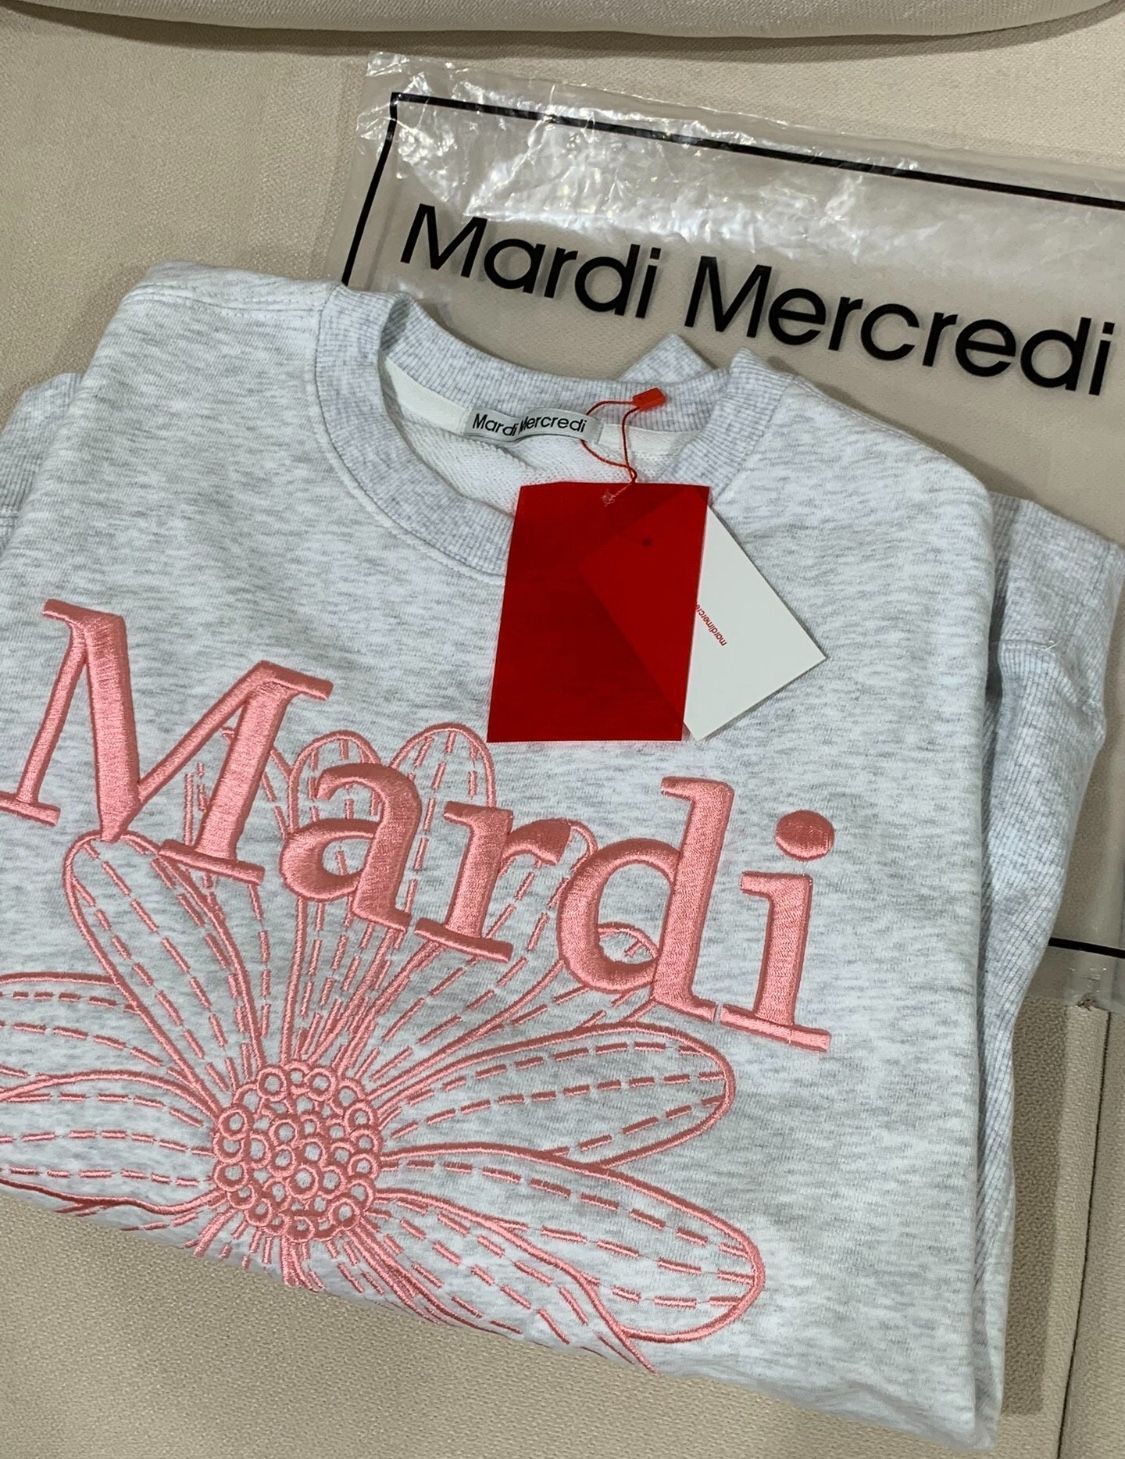 春先取りの マルディメクルディ Mardi Mercredi スウェット刺繍 